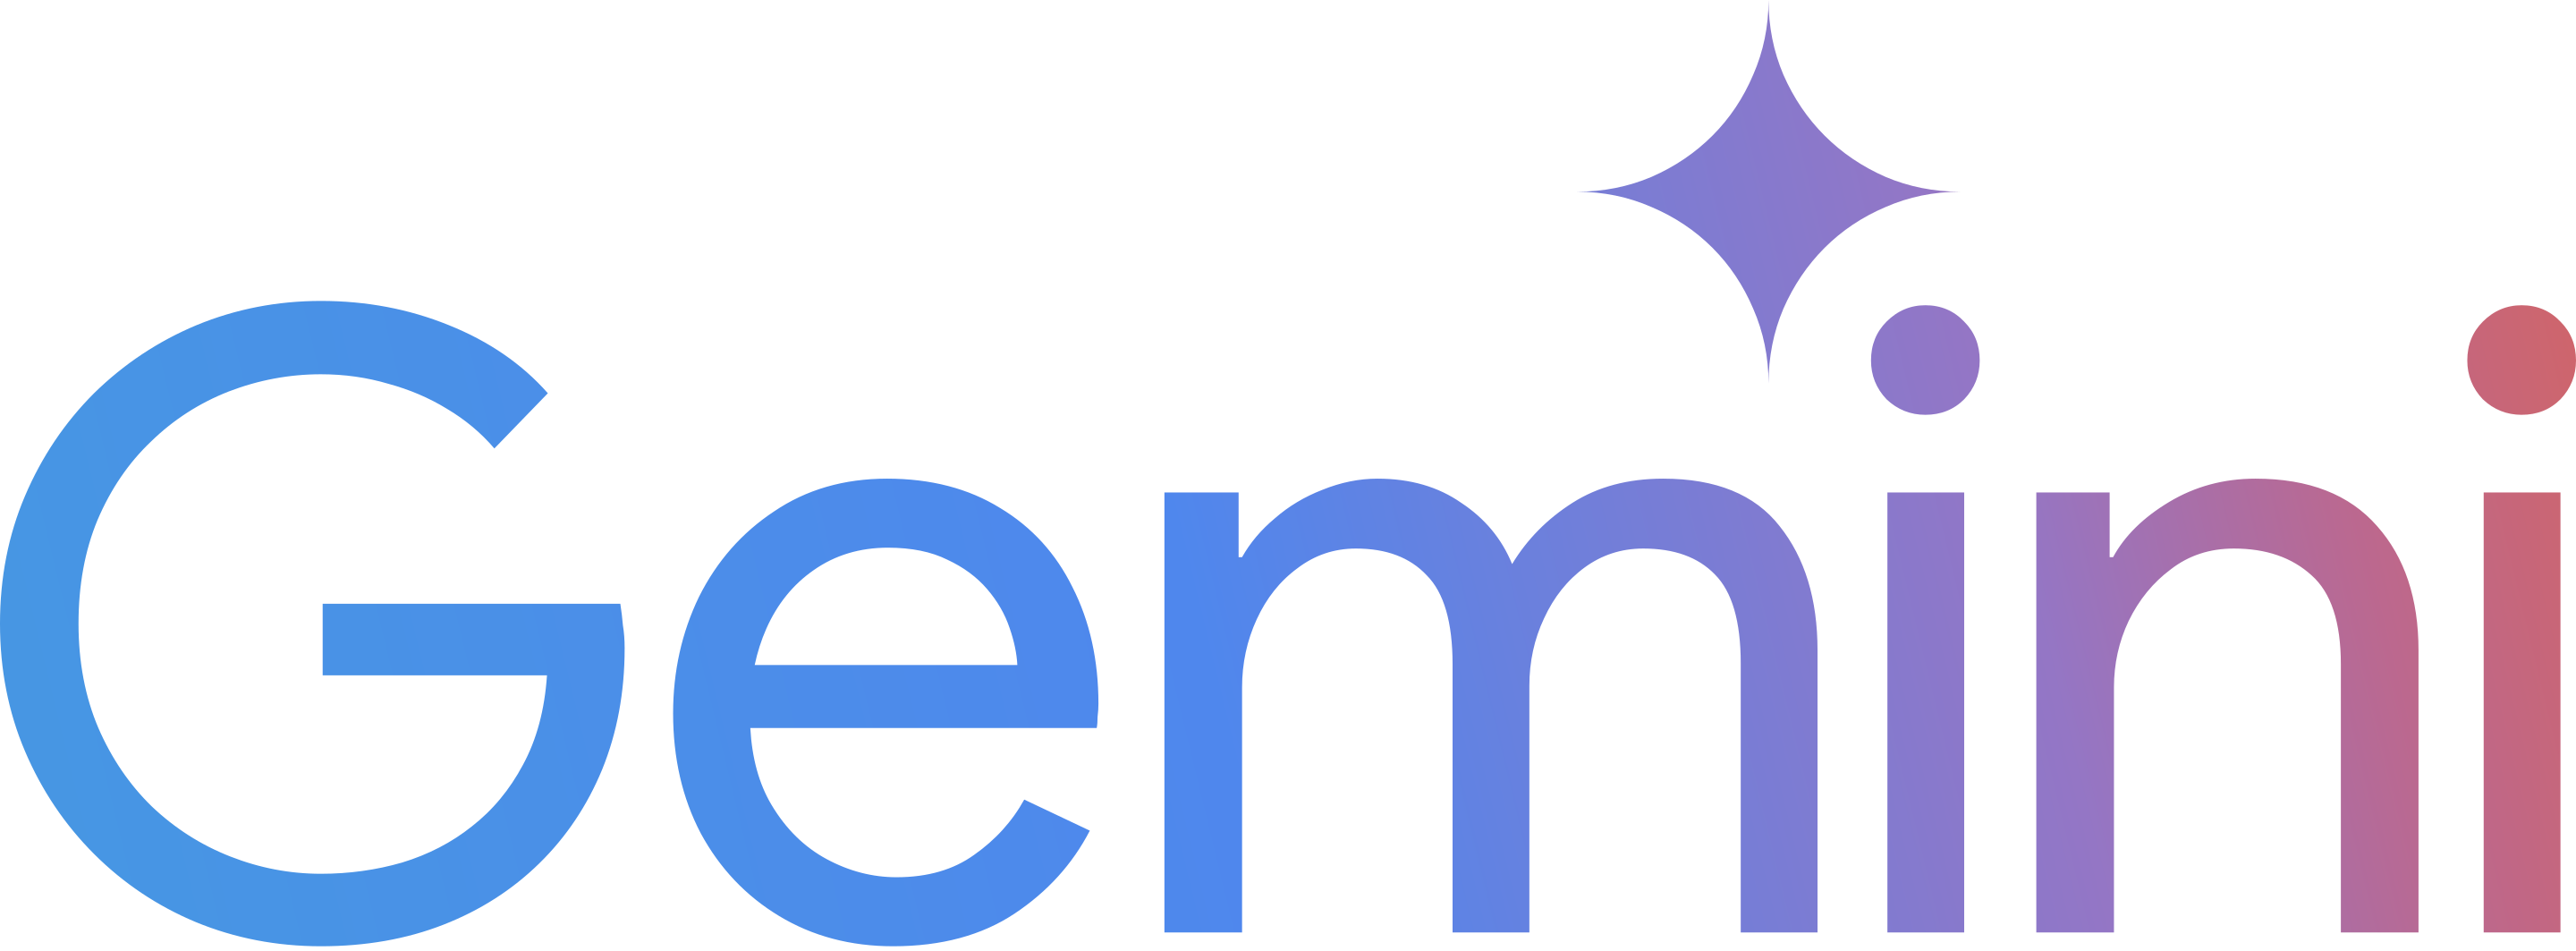 Google DeepMind - Gemini - Gemini Cloud Assist - Gemini Code Assist - Gemini Nano - Gemini Pro aka Bard - Google Bard